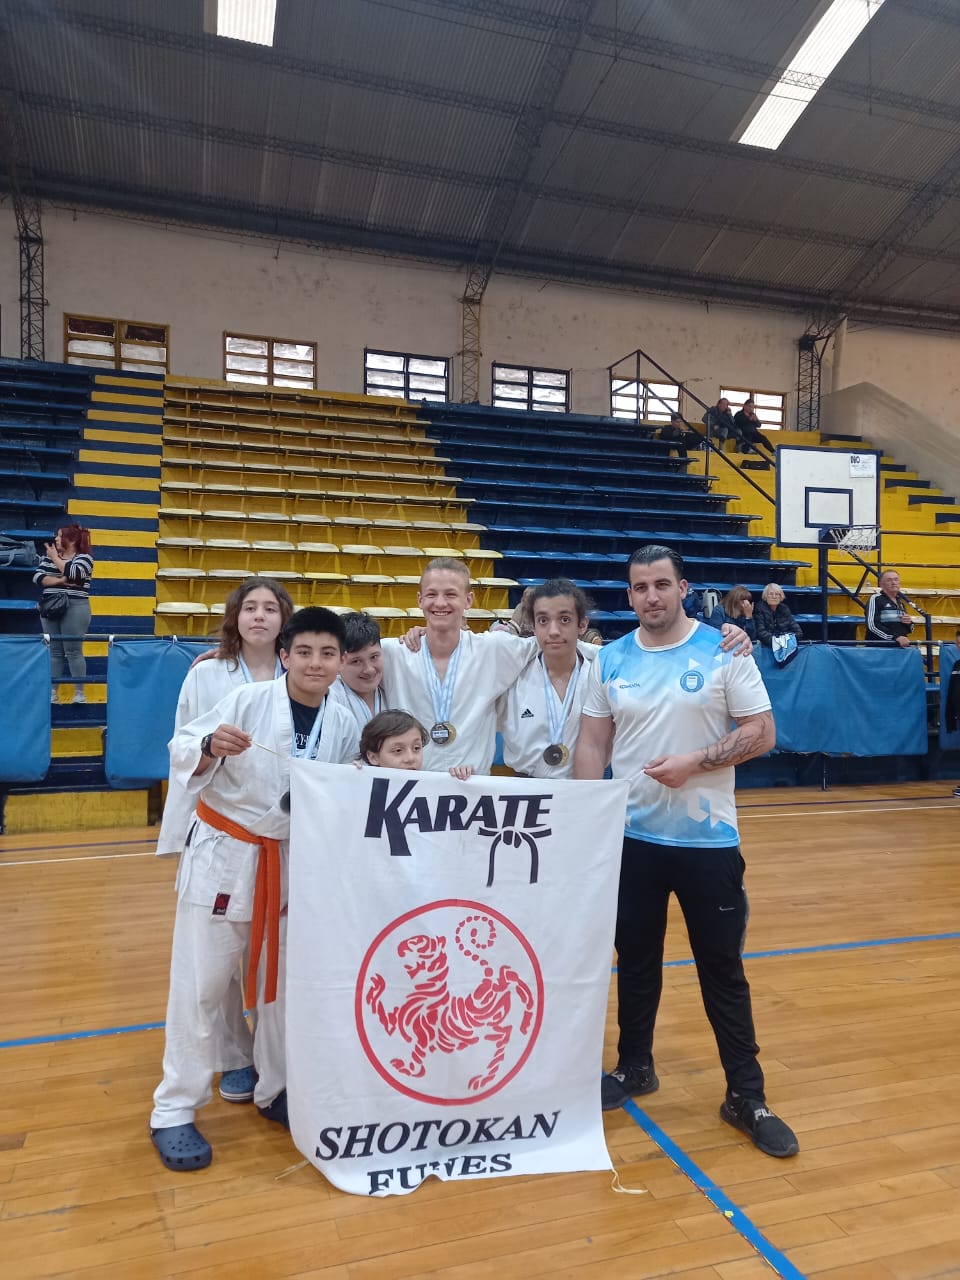 Ocho alumnos de la escuela Shotokan Funes participaron del torneo de karate que organizó Rosario Central